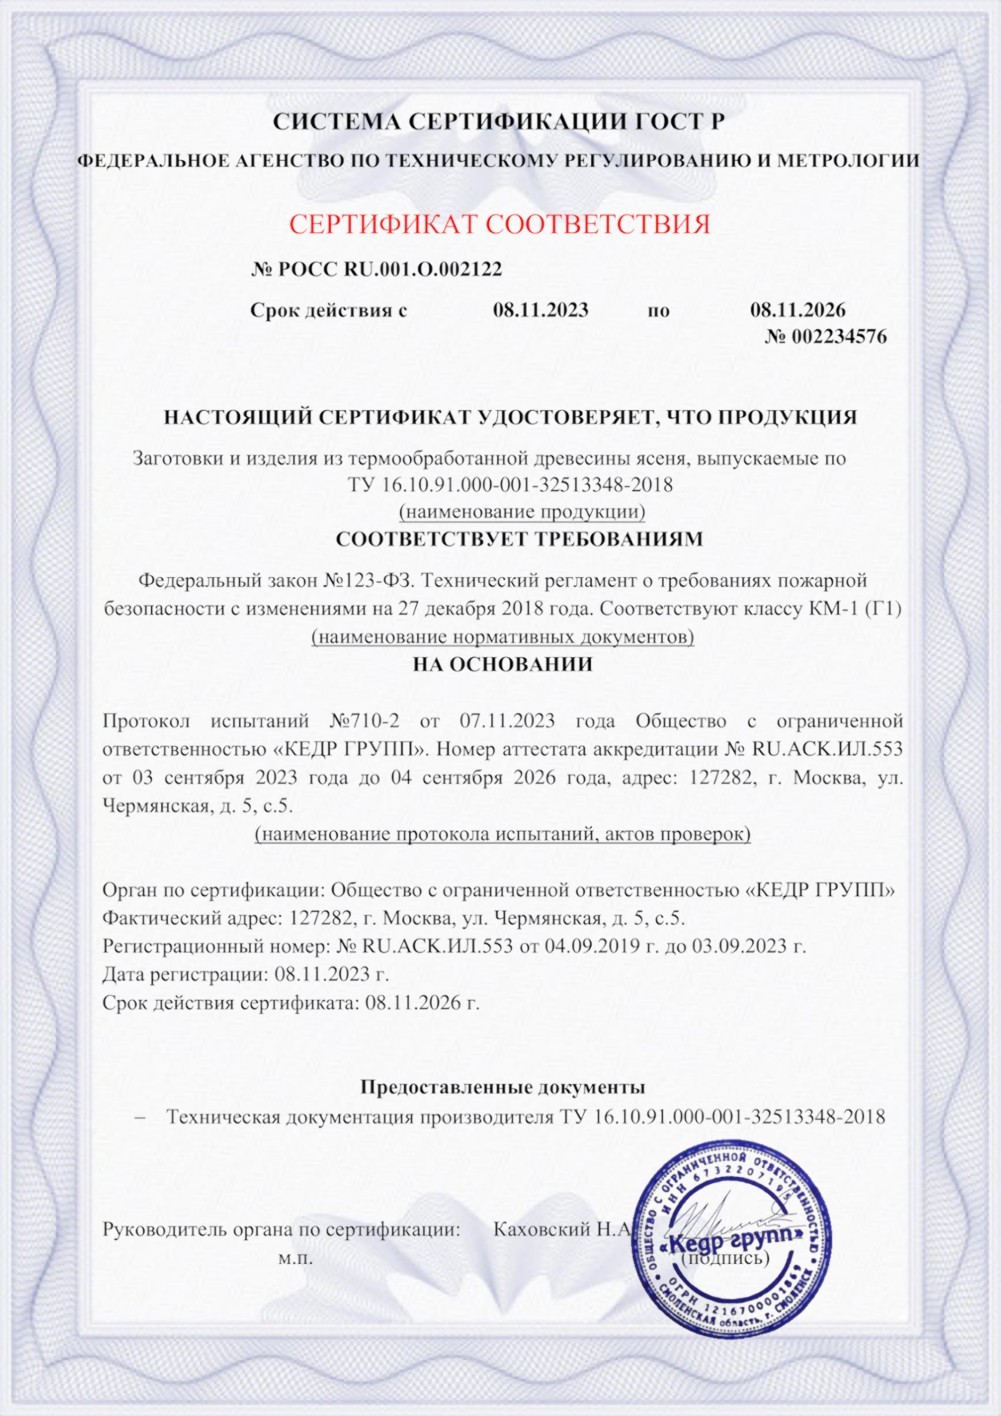 Сертификат соответствия - класс КМ-1 (Г1)